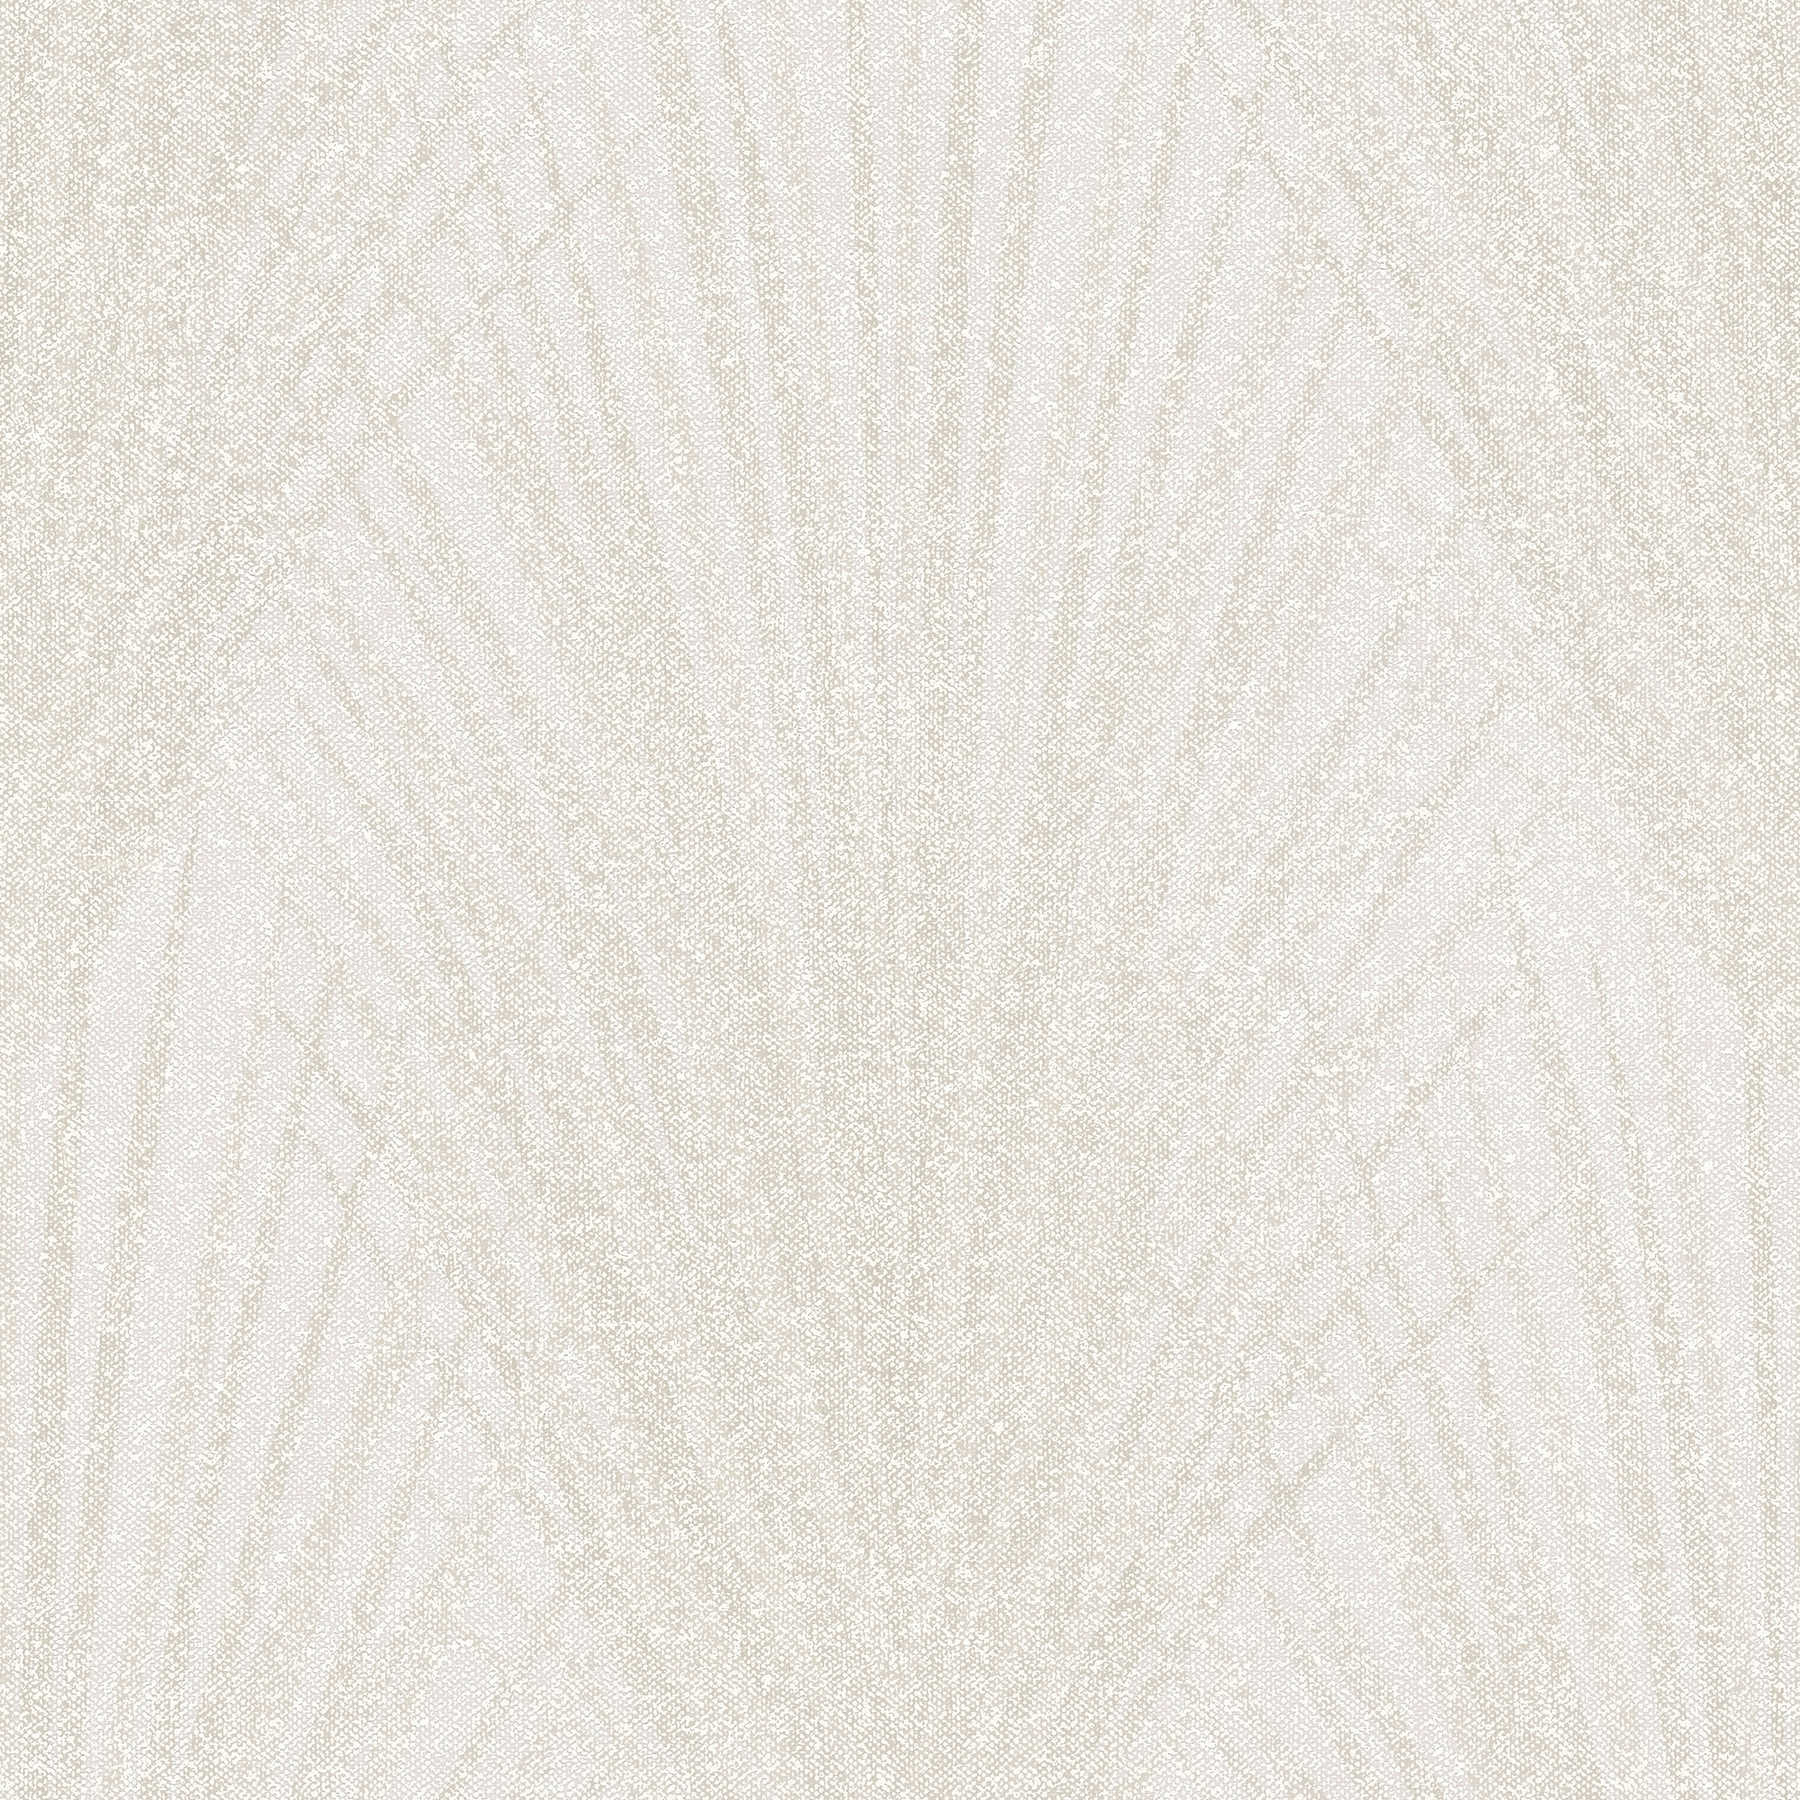         Fern leaf pattern wallpaper abstract design - cream, beige
    